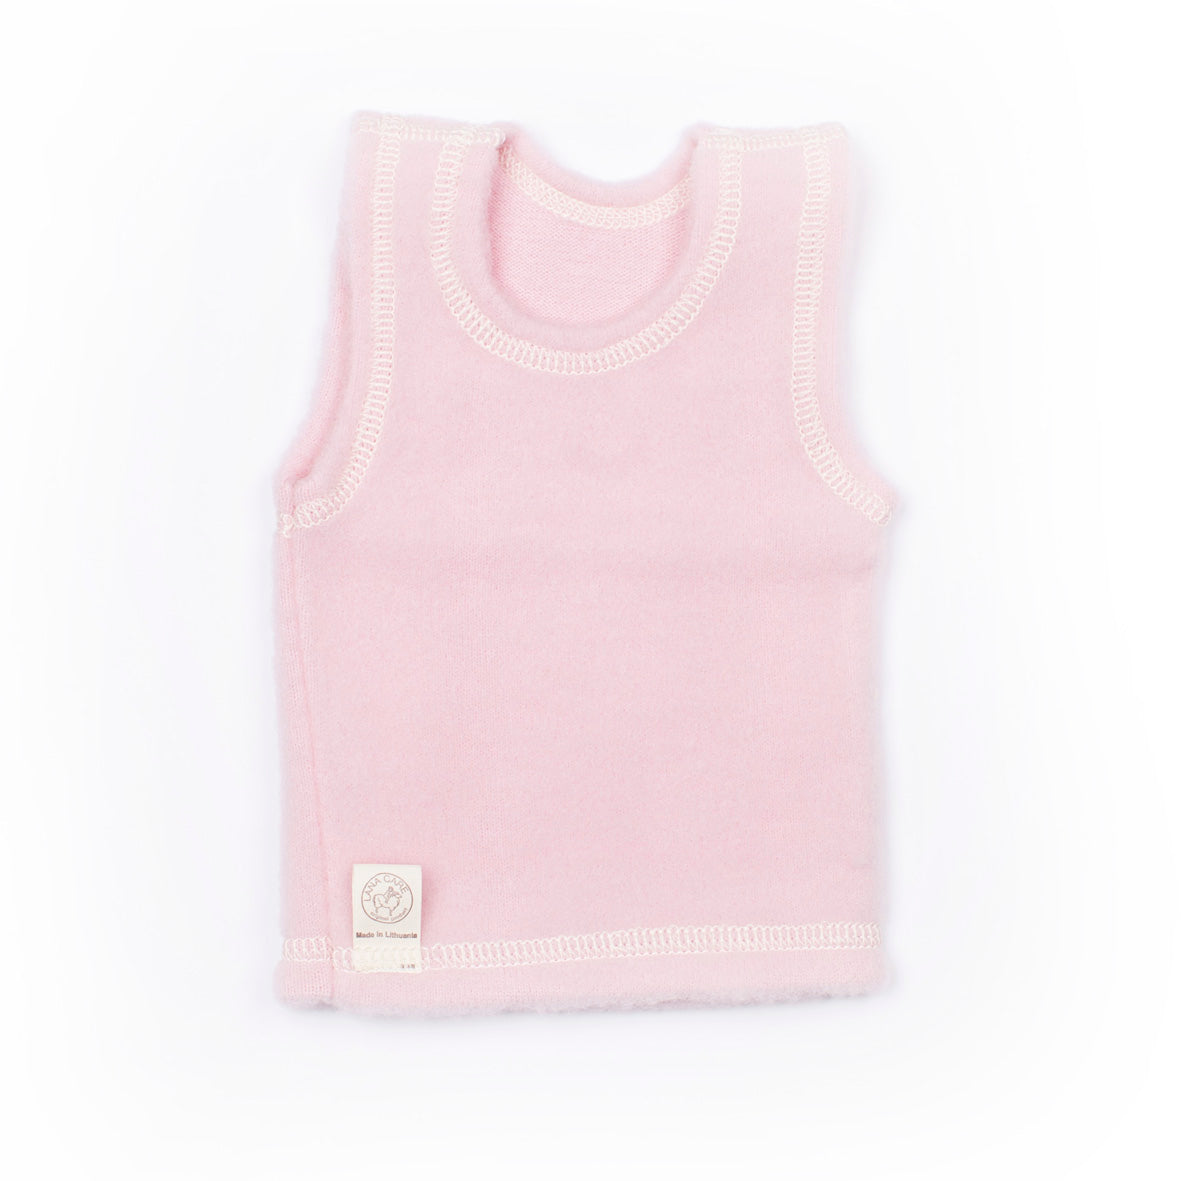 LANACare Baby/Toddler Vest in Organic Merino Wool